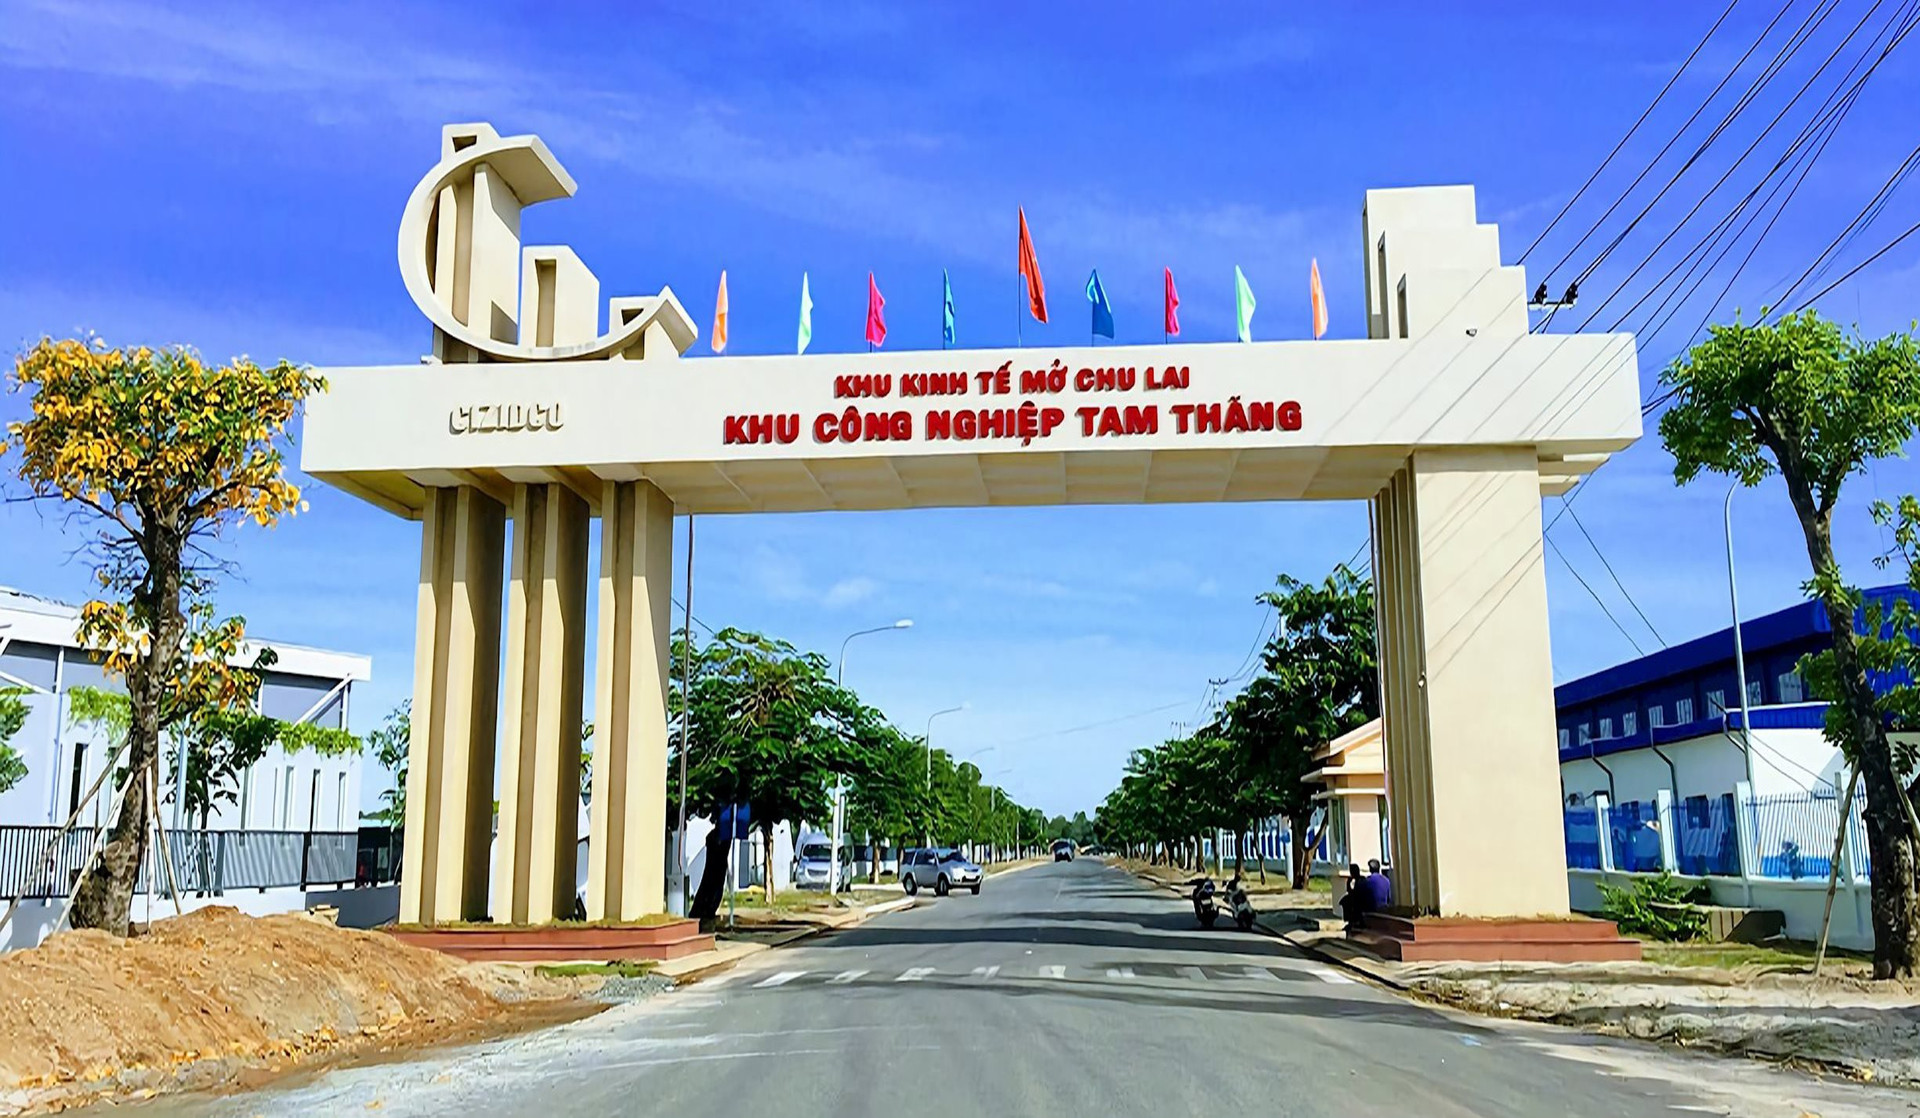 Khu công nghiệp Tam Thăng và Tam Thăng mở rộng do CIZIDCO làm chủ đầu tư thân thiện môi trường và phát triển bền vững. Ảnh NTB